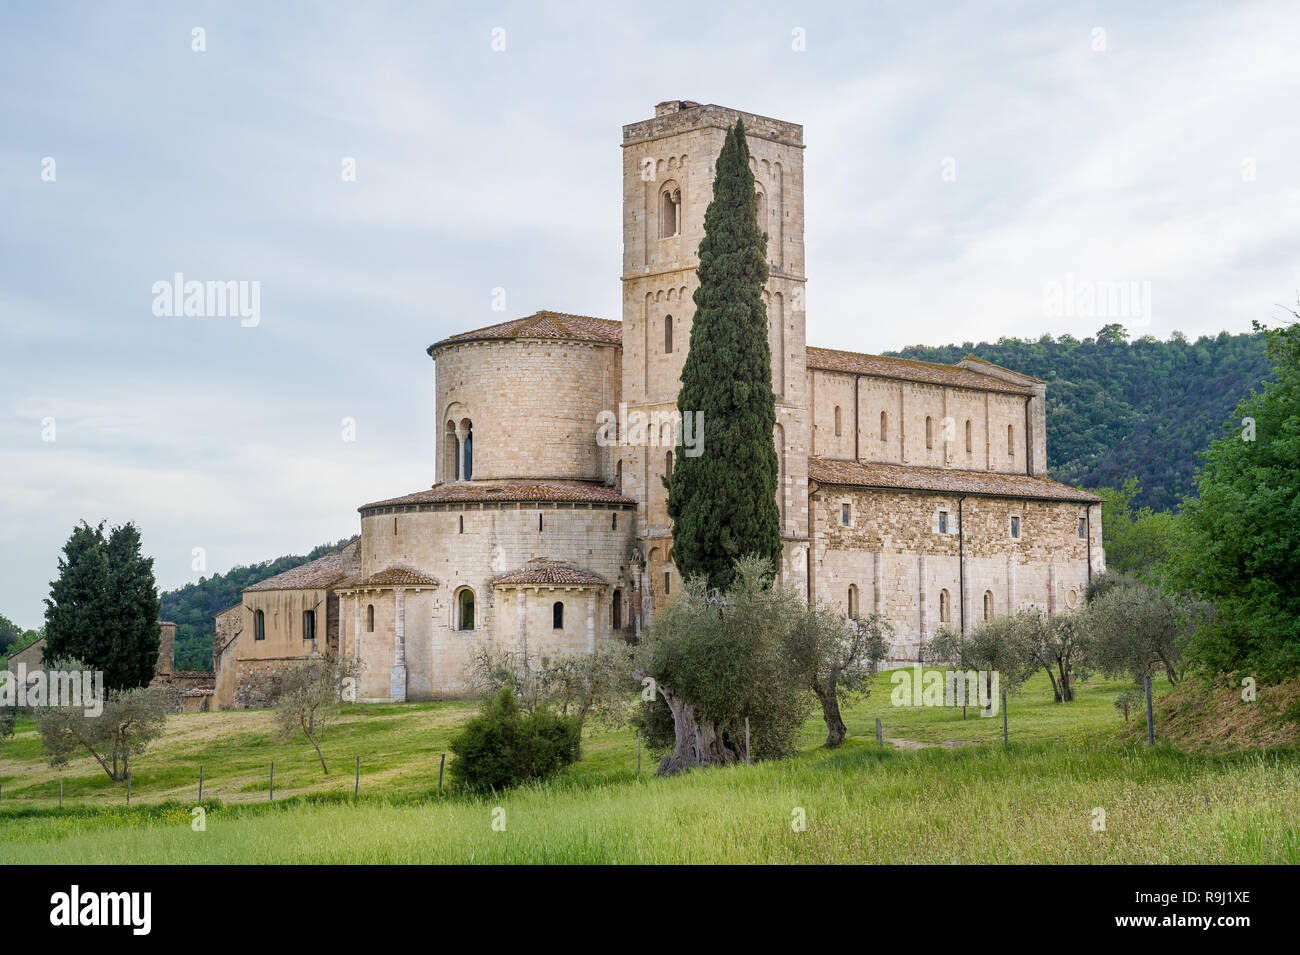 Sant Antimo Kloster in Val d'Orcia, beliebte Reise Sehenswürdigkeit in der Nähe von Montalcino. Toskana, Italien Stockfoto